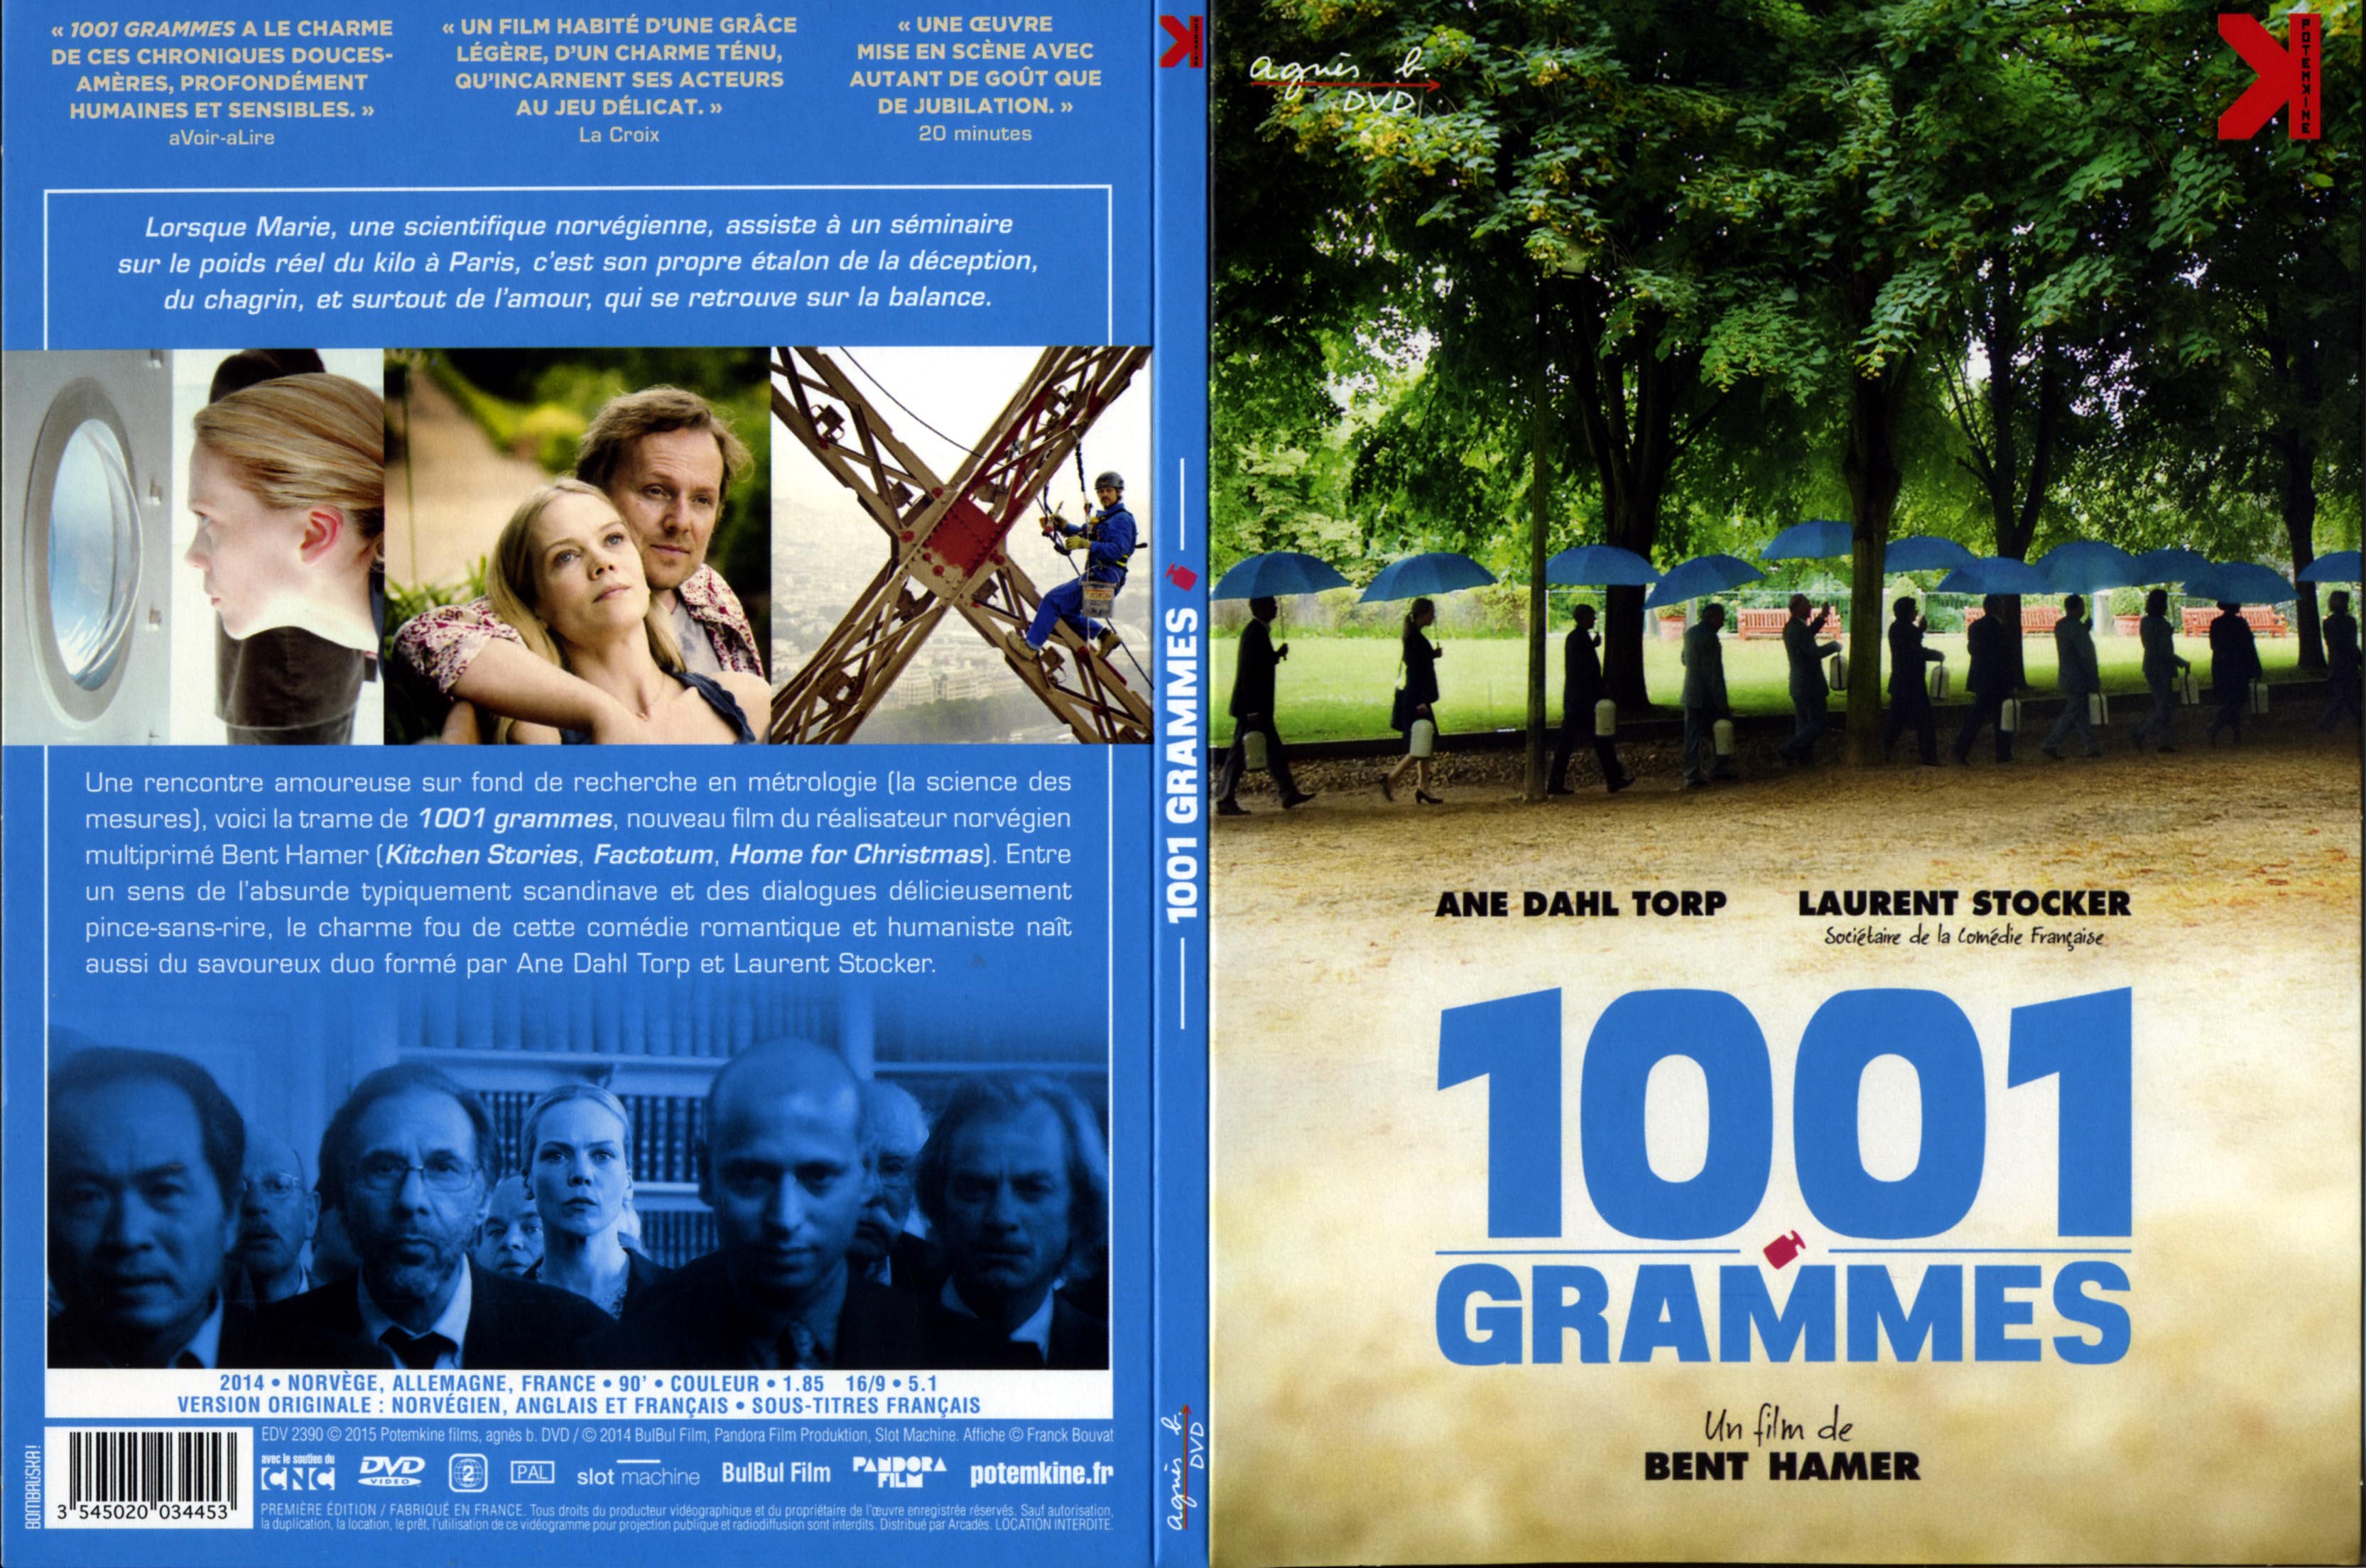 Jaquette DVD 1001 grammes